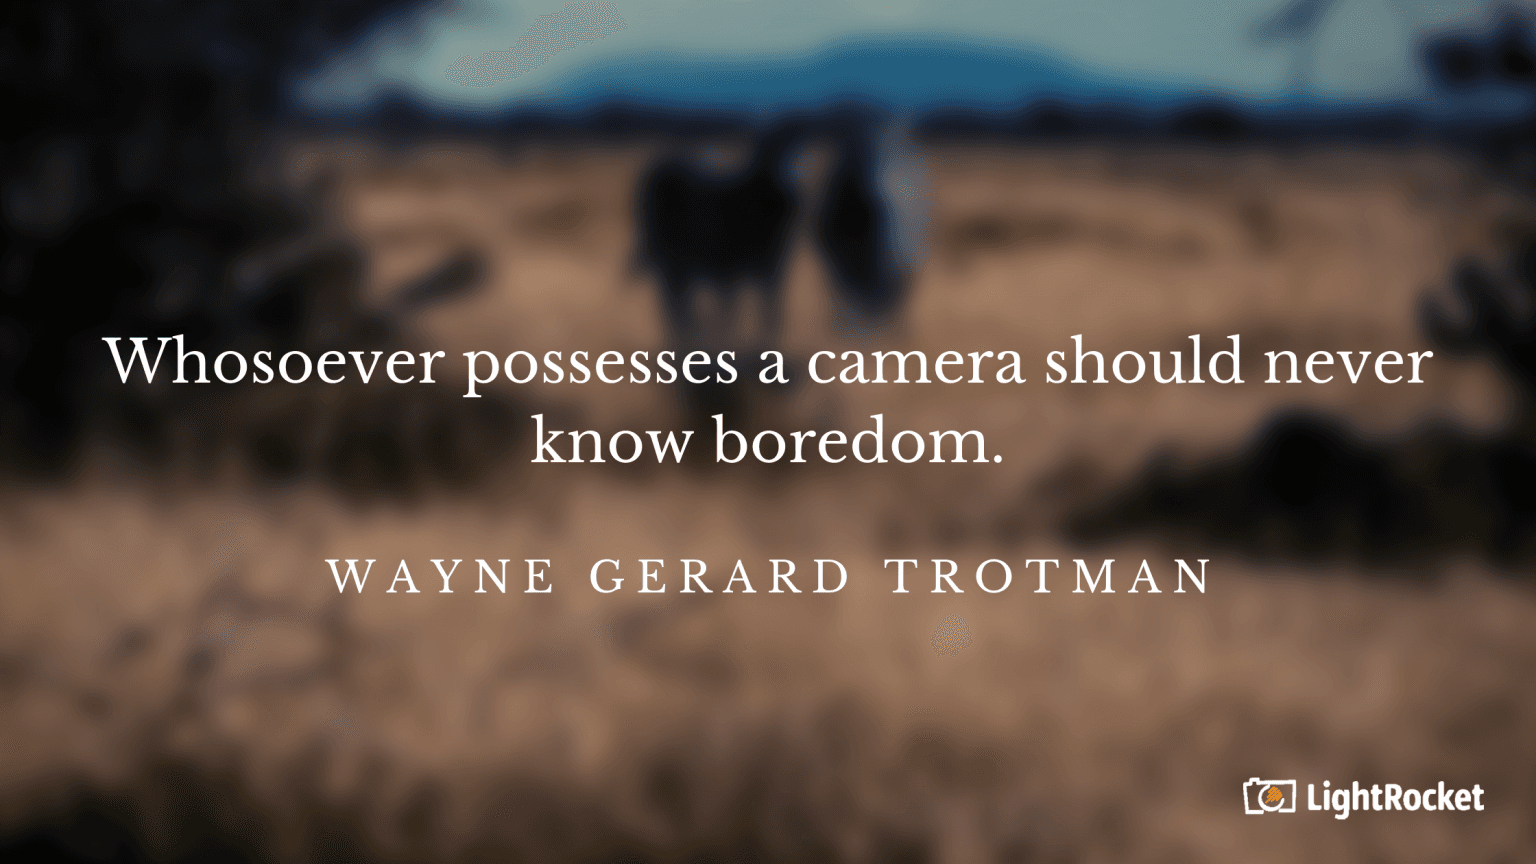 “Whosoever possesses a camera should never know boredom.” – Wayne Gerard Trotman